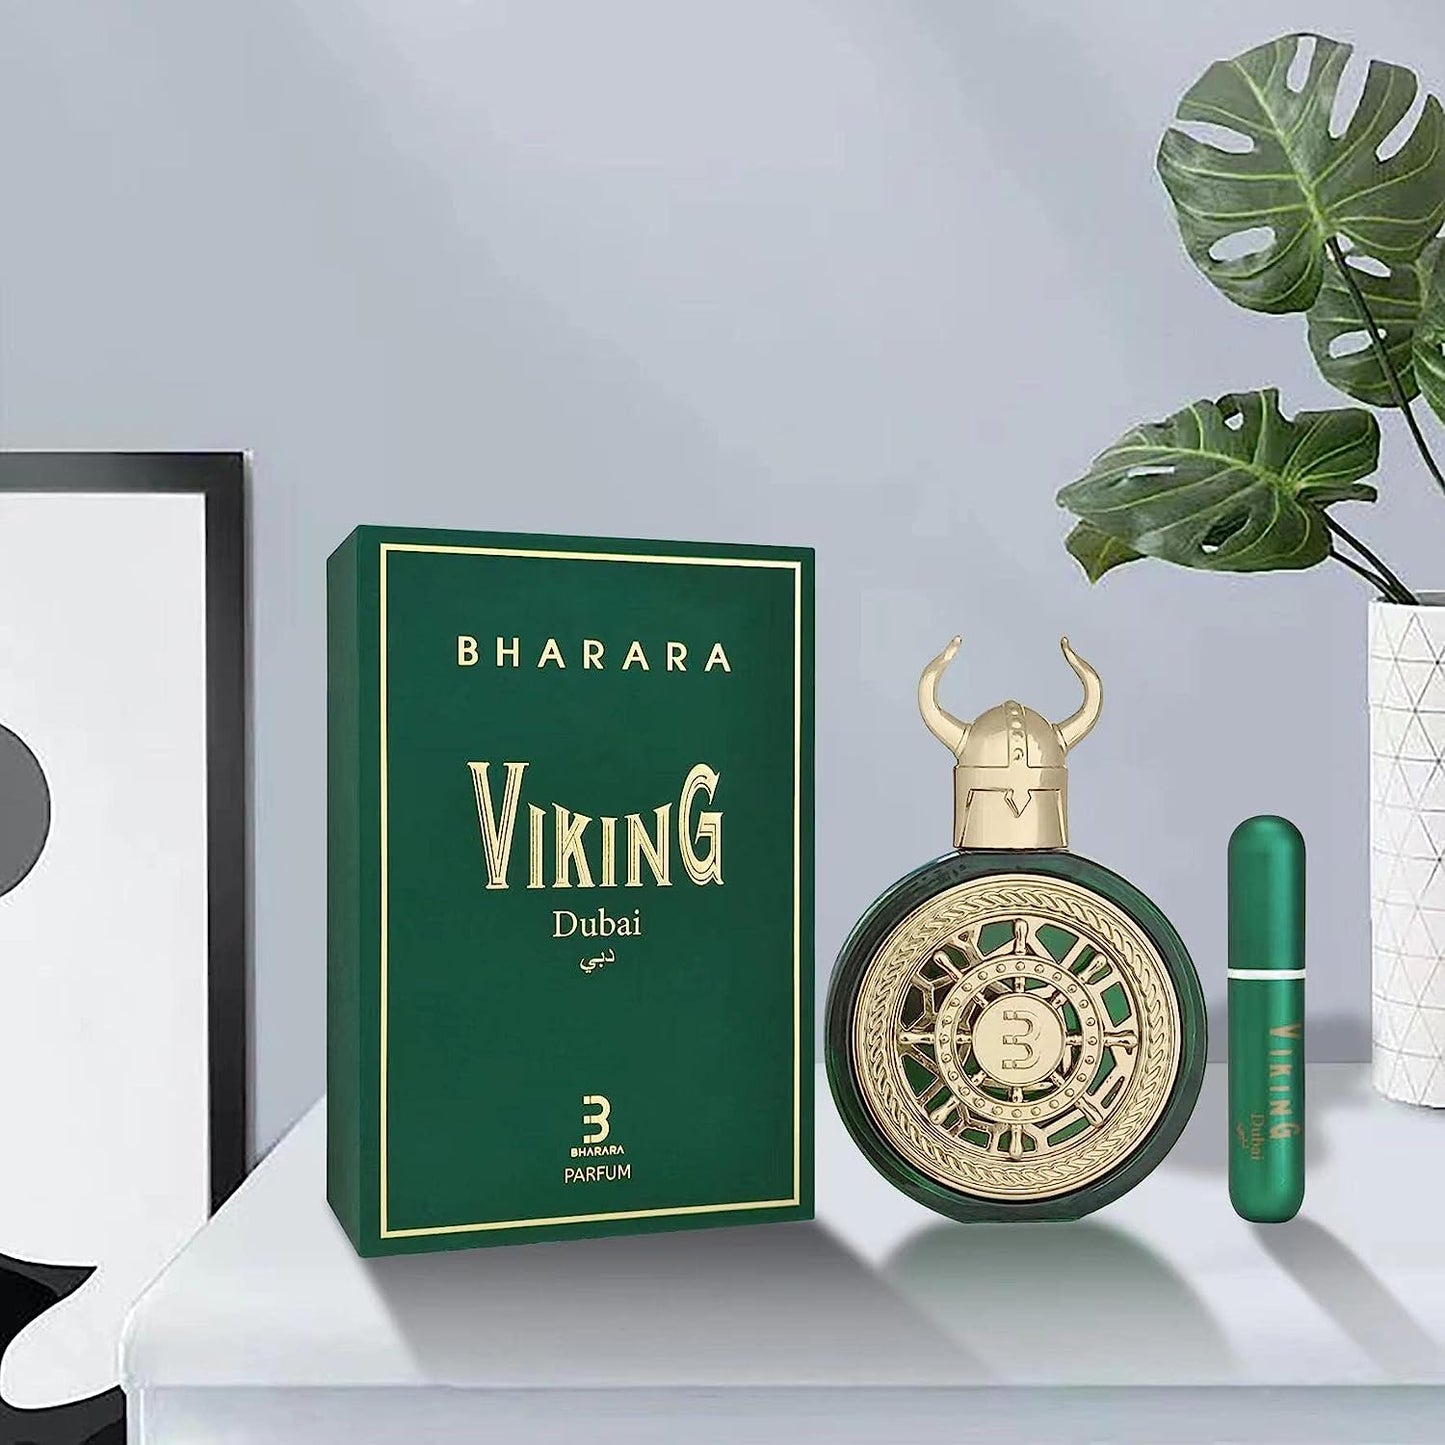 Bharara Viking Dubai Parfum 3.4 oz 100 ml Spray Unisex – Rafaelos